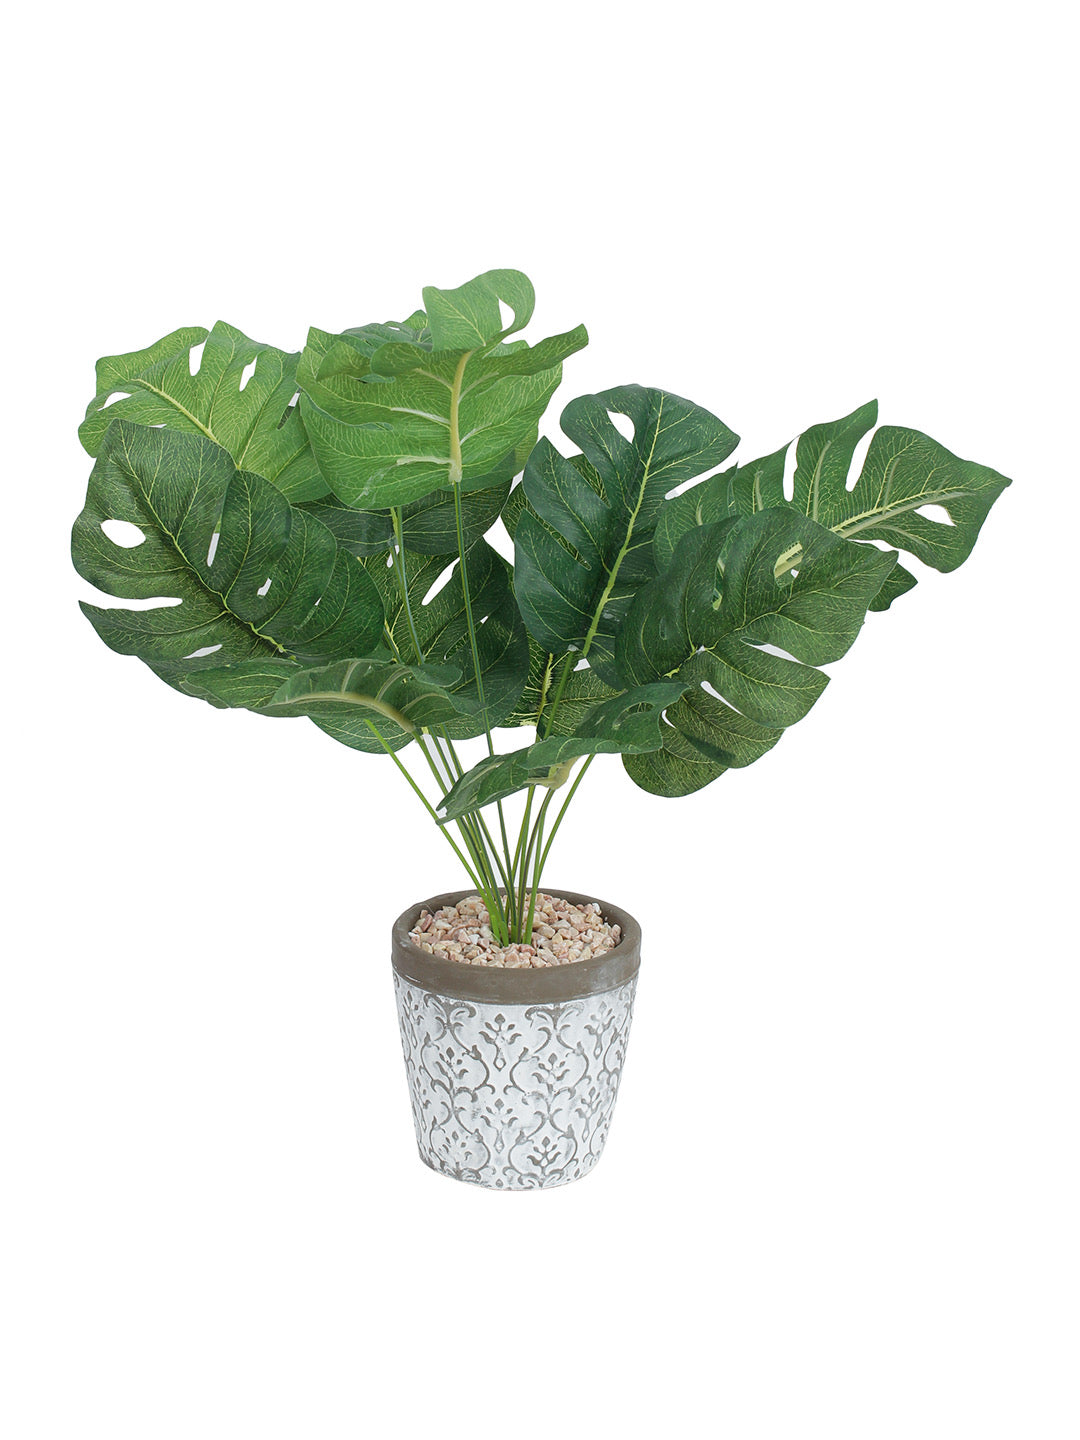 Green Artificial Philo Cut Leaf Plant with White Pot - Default Title (APL20182)